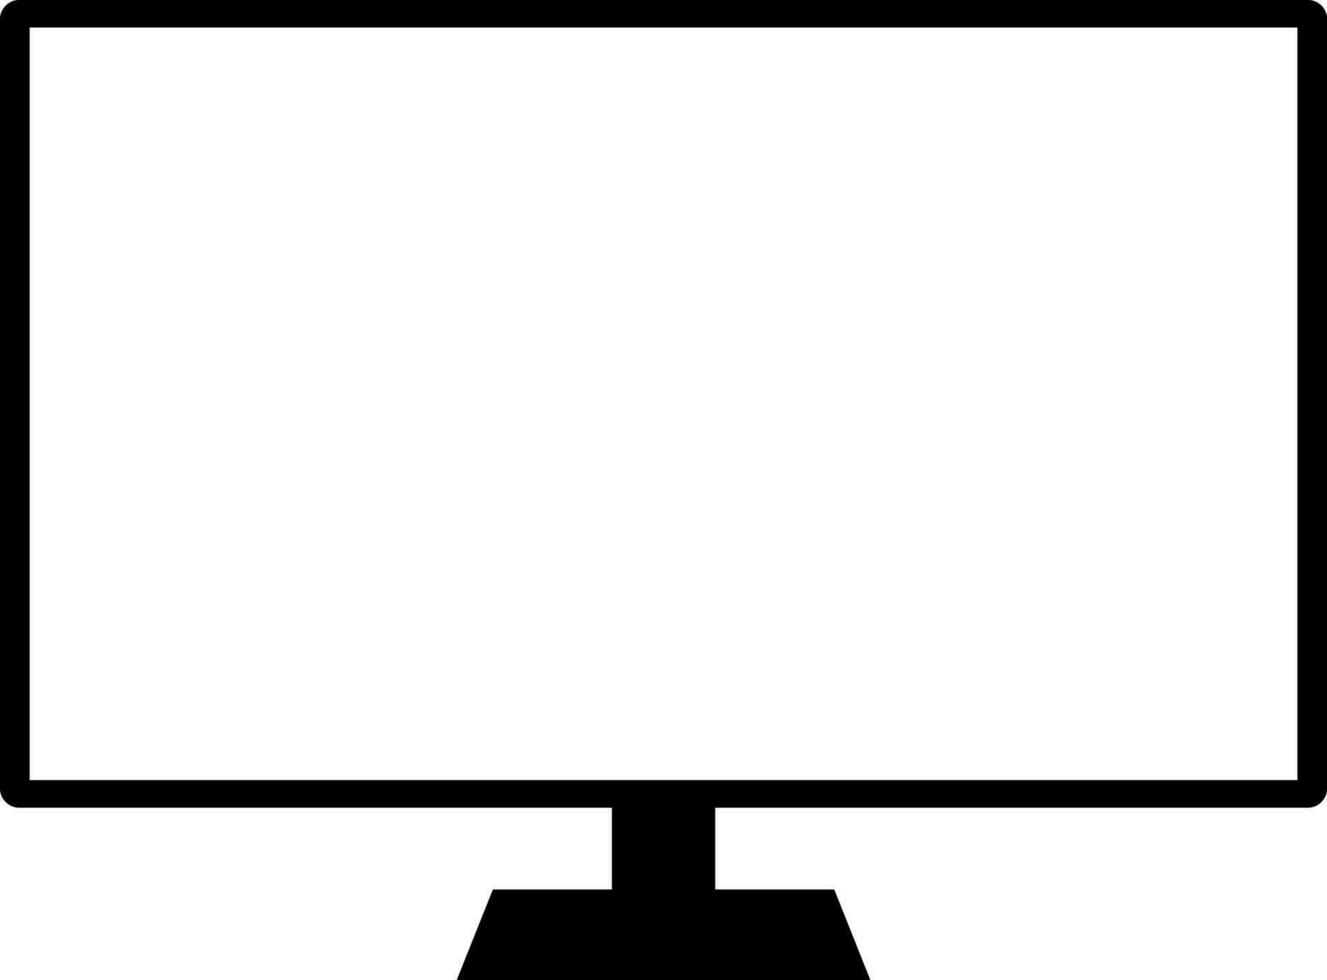 Blank modern tv screen template vector